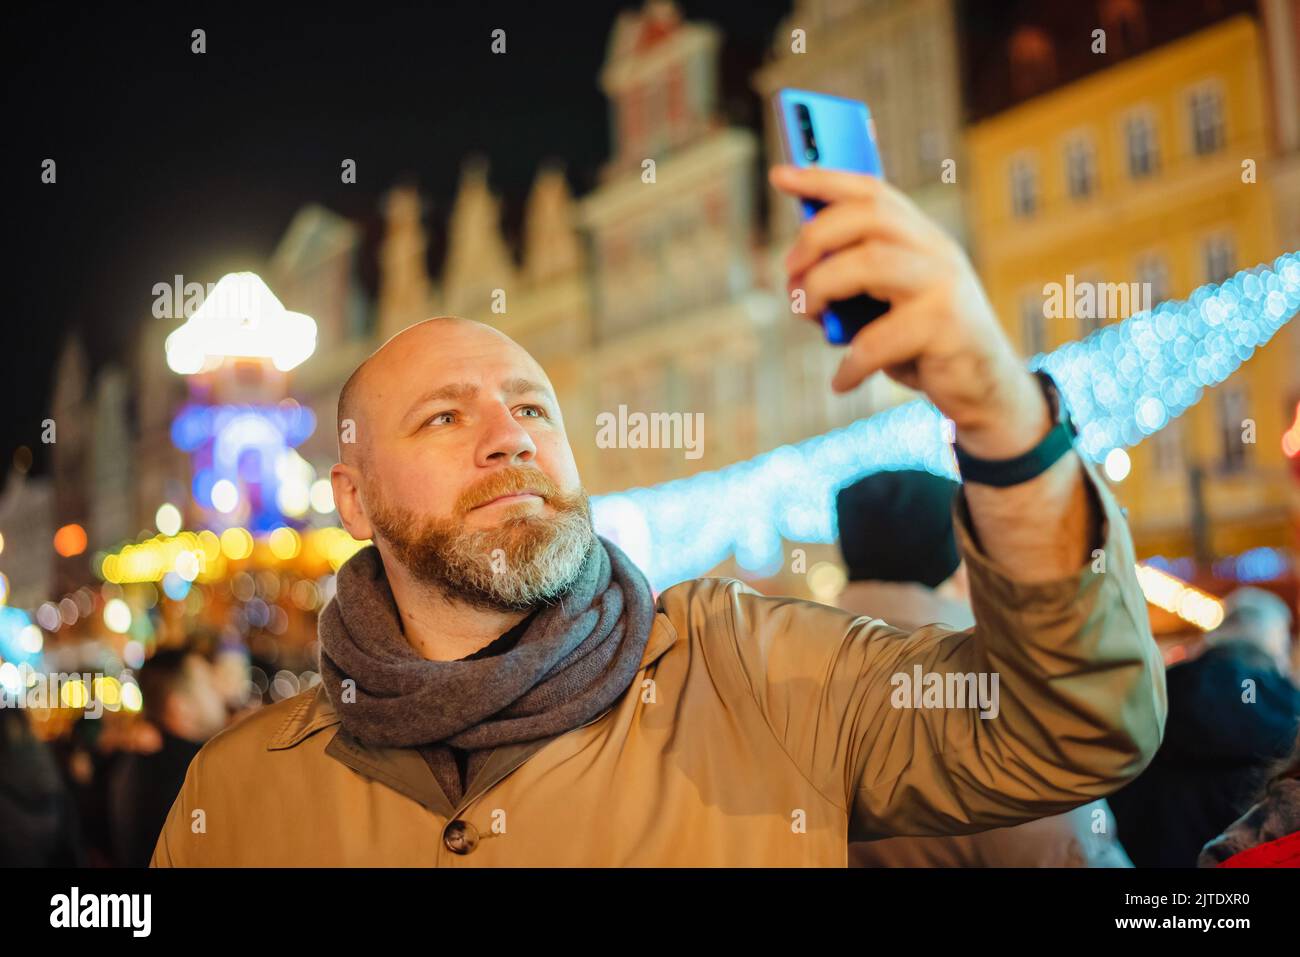 Una persona adulta scatta una foto con il suo smartphone in una fiera di natale della città. L'uomo sta prendendo selfie con lo smartphone Foto Stock